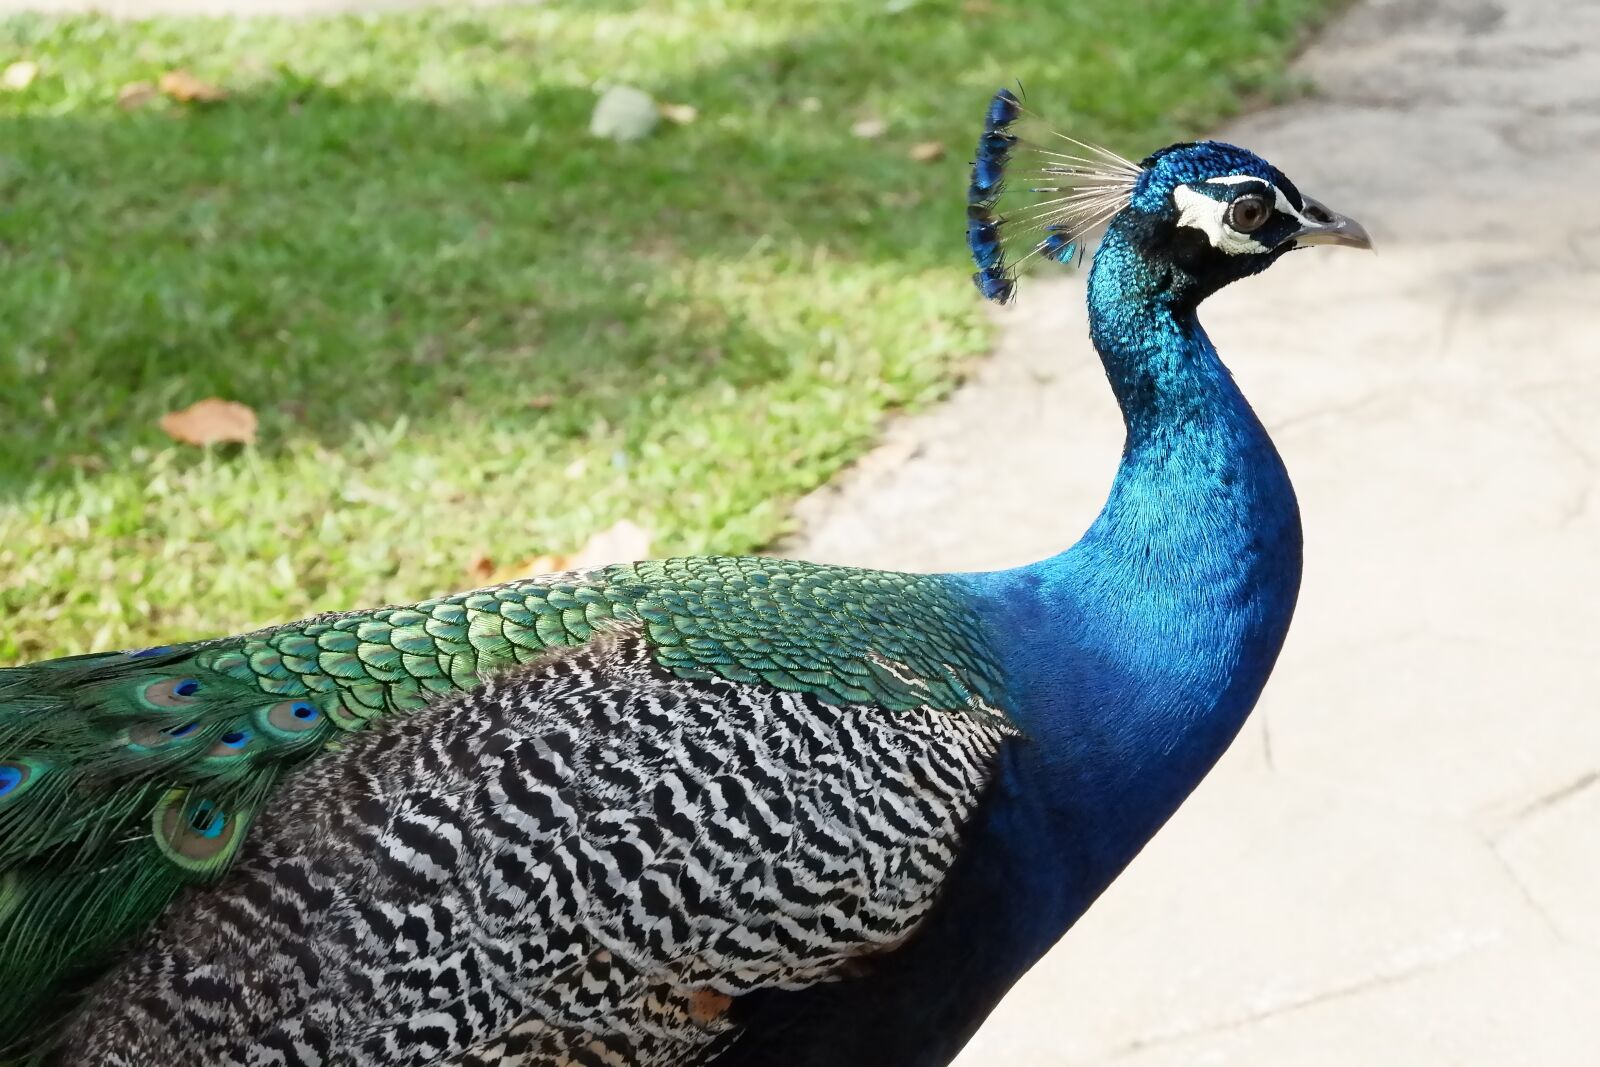 Fujifilm X-A10 sample photo. Bird, peacock, blue photography